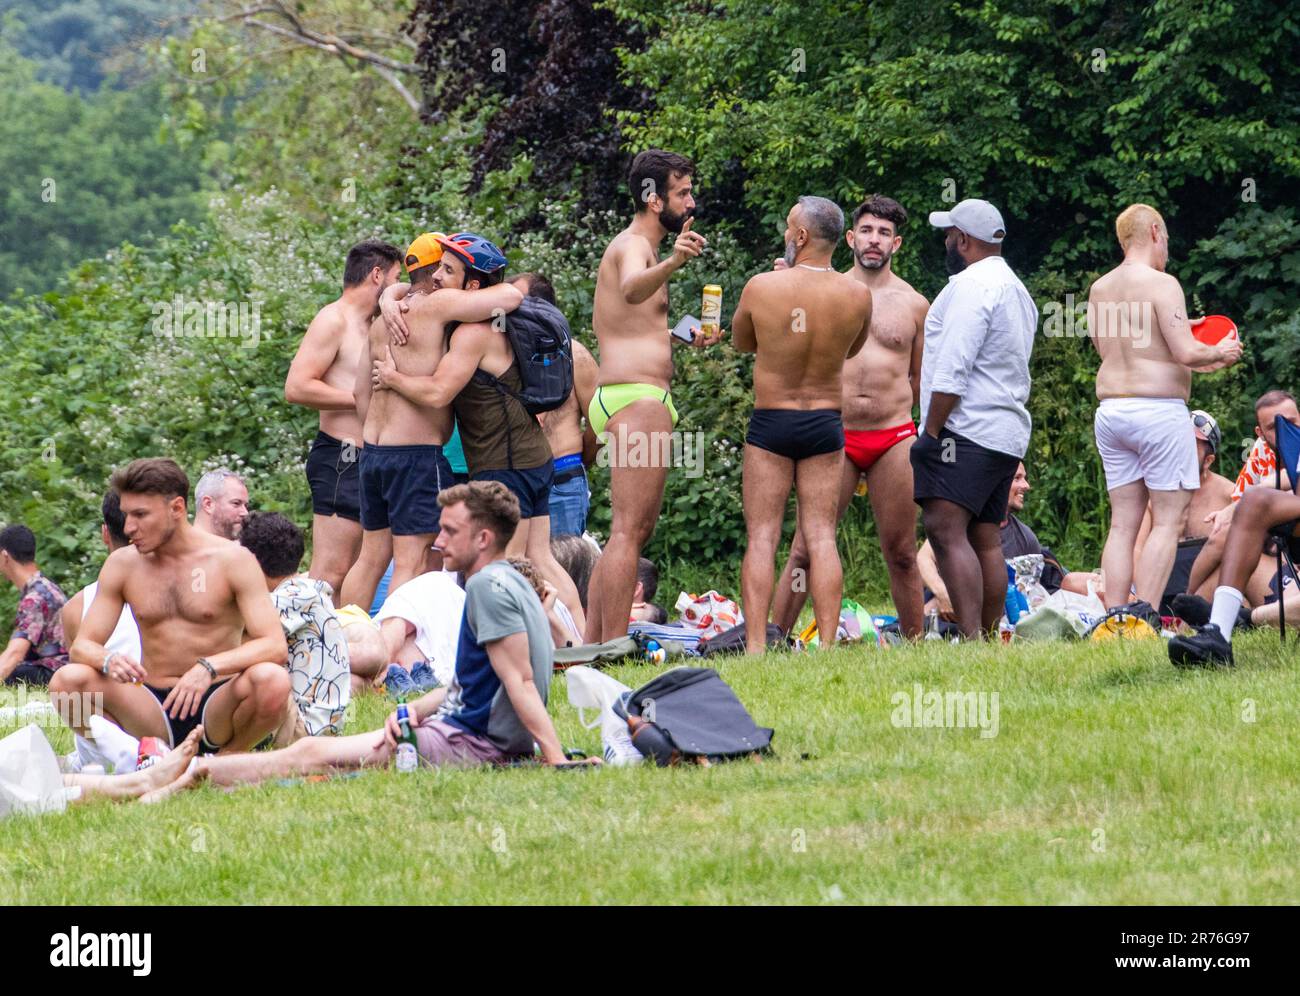 PIC show: Tempo caldo su Hampstead Heath Gay area solarium vicino al laghetto degli uomini godere l'onda di calore secondo Huff Post “The Men's Pond has an i Foto Stock